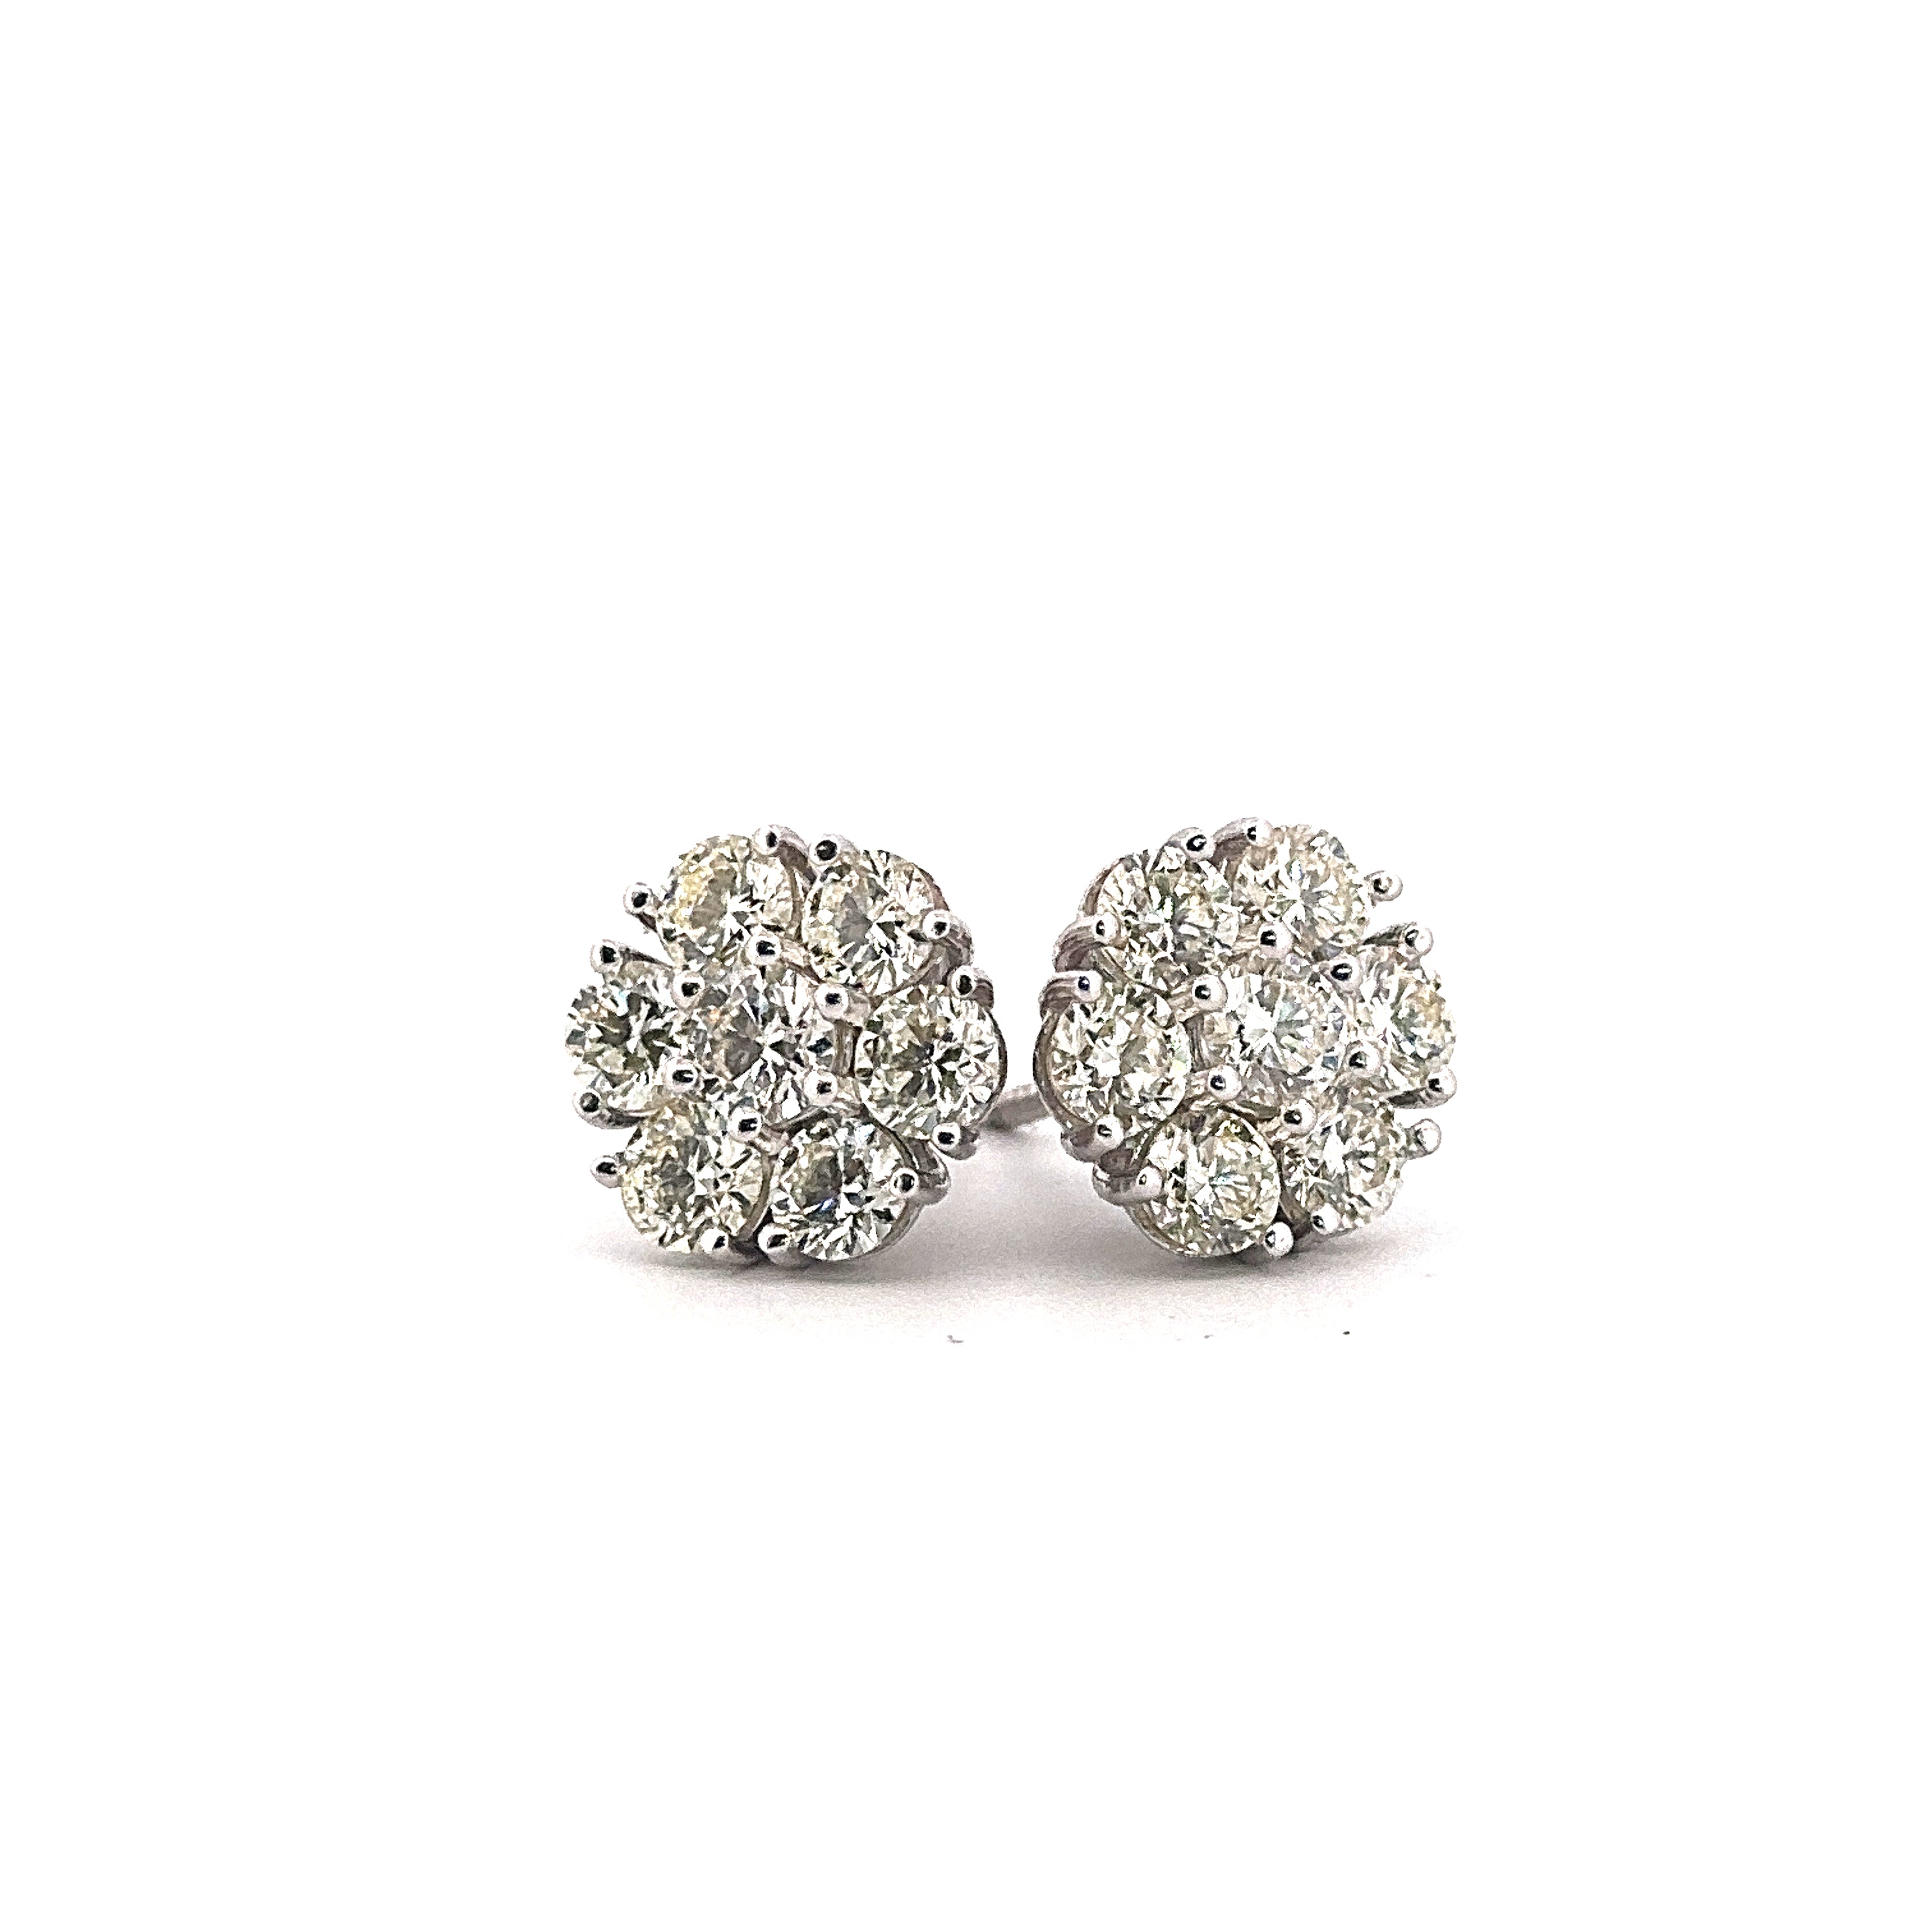 14K White Gold Diamond Earrings 2.76CTW